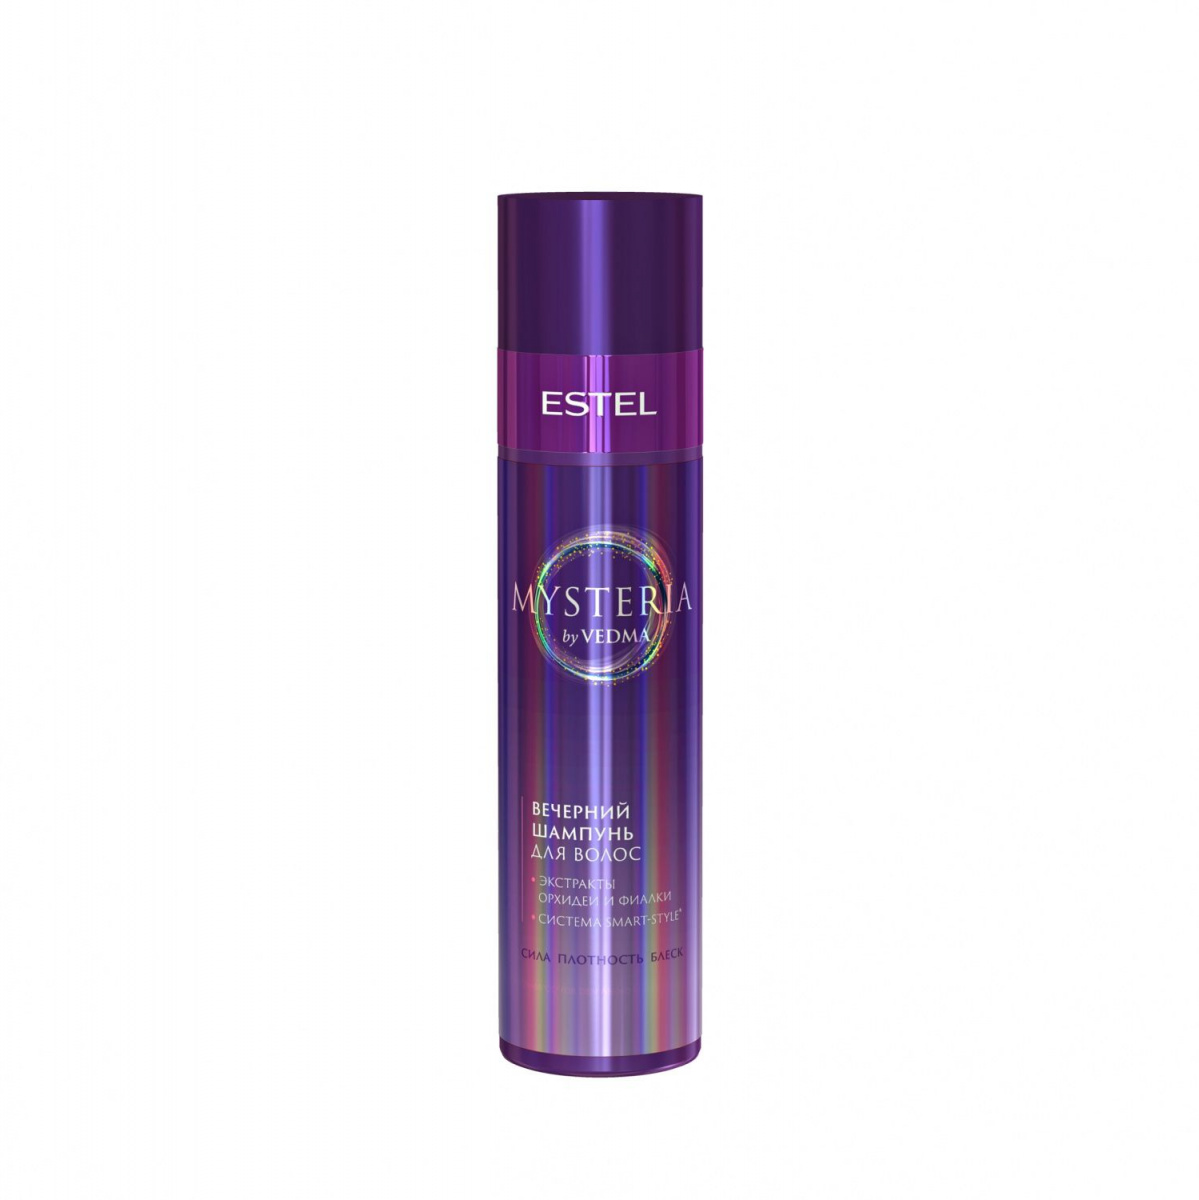 Estel Mysteria - Шампунь для волос 250 мл Estel Professional (Россия) купить по цене 692 руб.